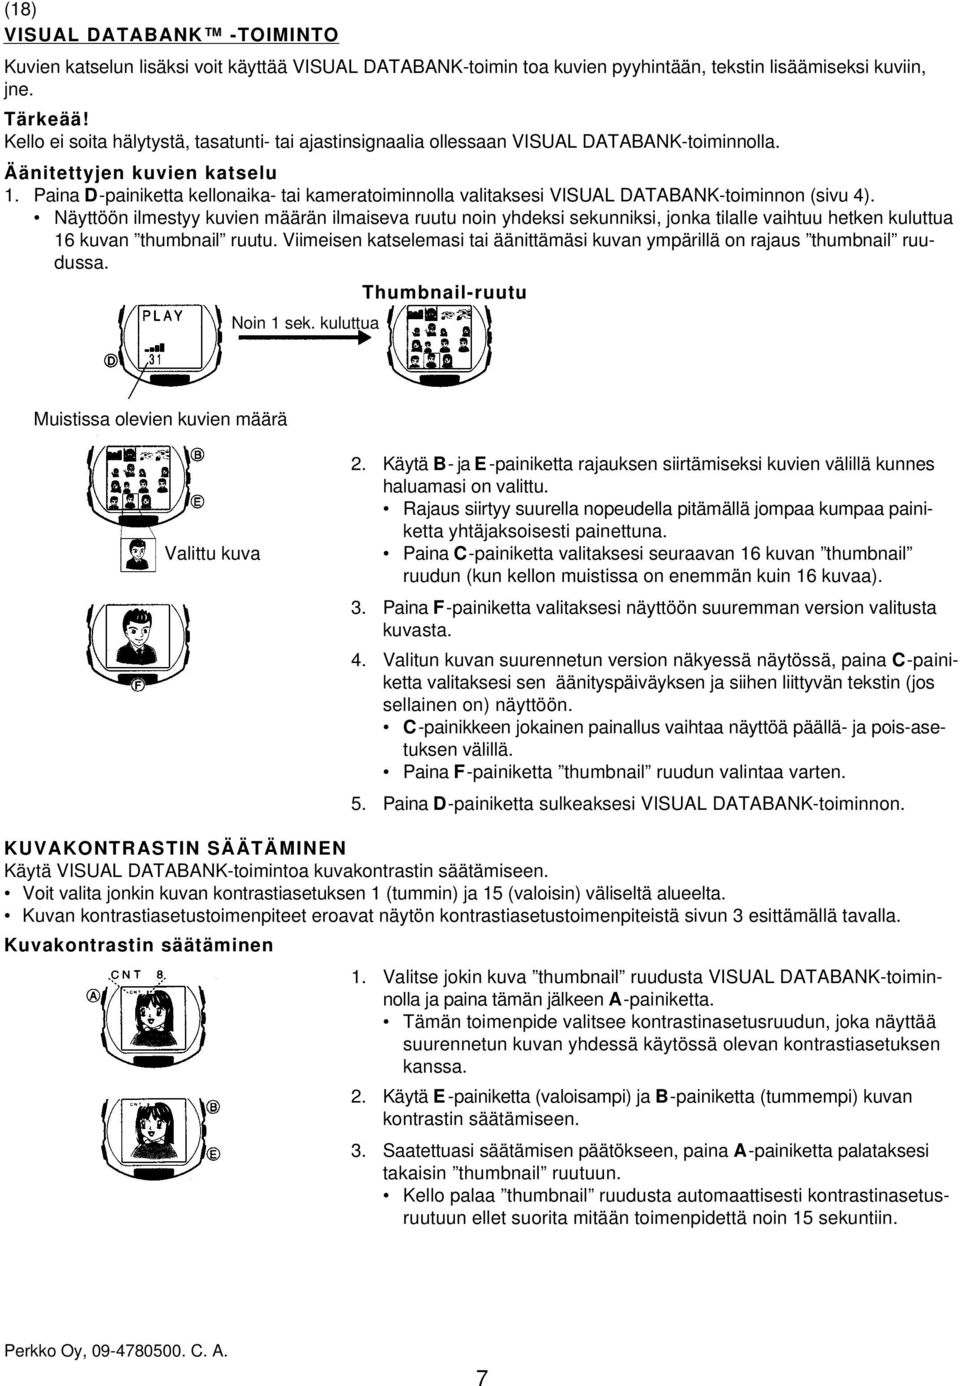 Paina D-painiketta kellonaika- tai kameratoiminnolla valitaksesi VISUAL DATABANK-toiminnon (sivu 4).